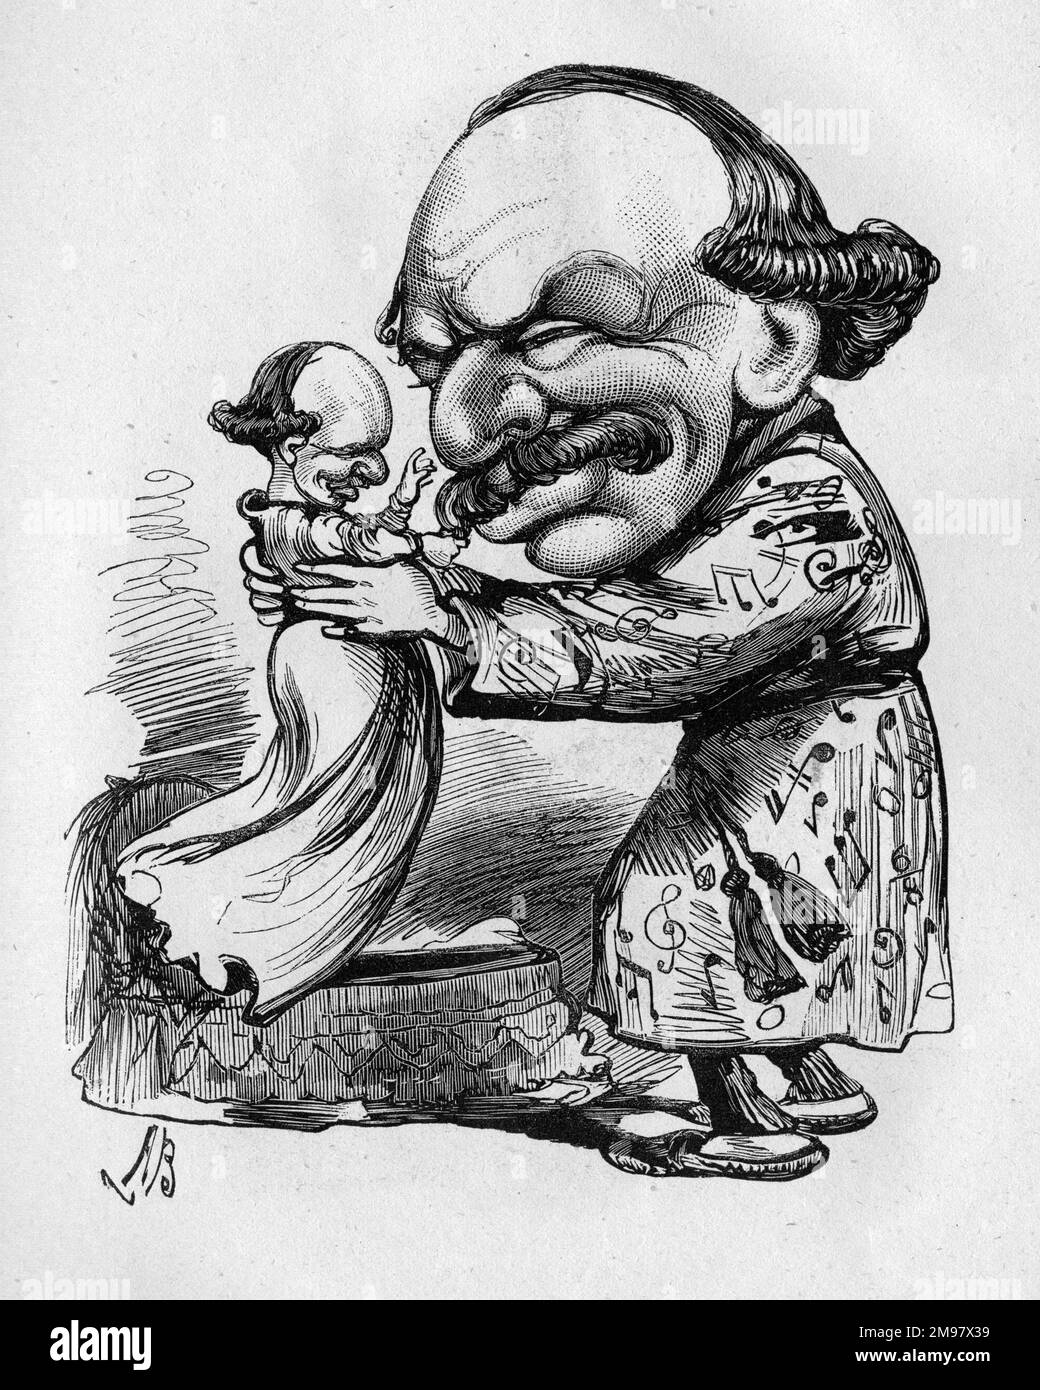 Caricature de Sir Julius Benedict (1804-1885) -- Mine de bébé. Il était un compositeur et chef d'orchestre d'origine allemande qui a vécu en Angleterre pendant la majeure partie de sa carrière. Banque D'Images